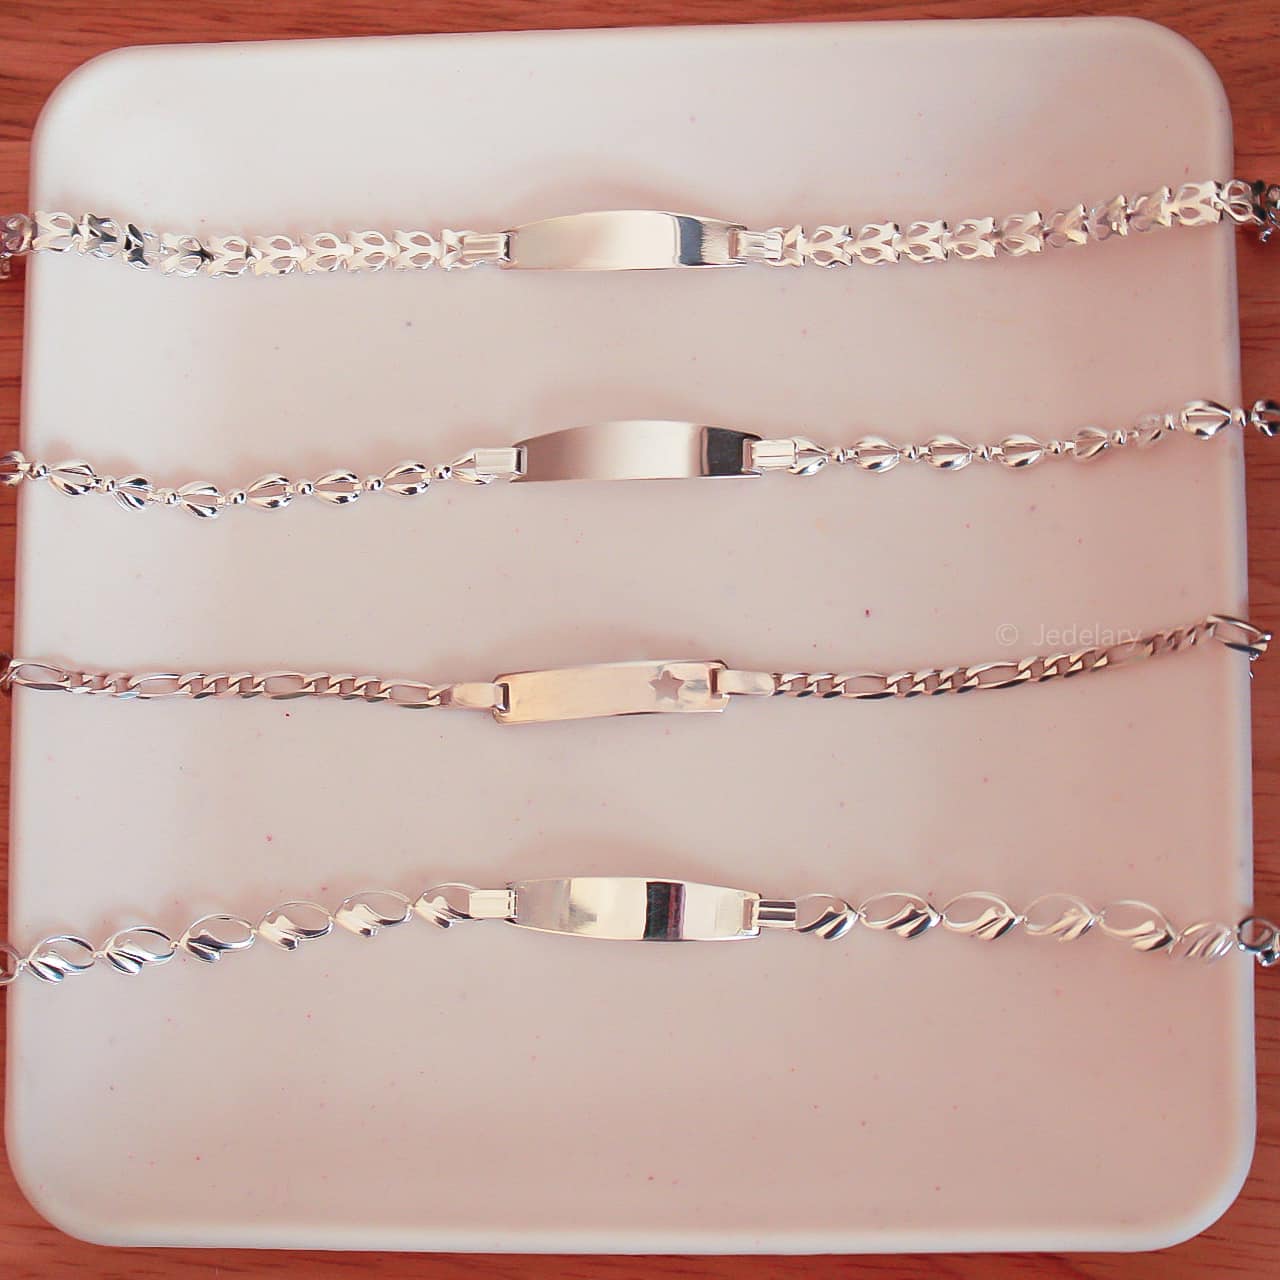 de mujer plata 925 – jedelary accessories